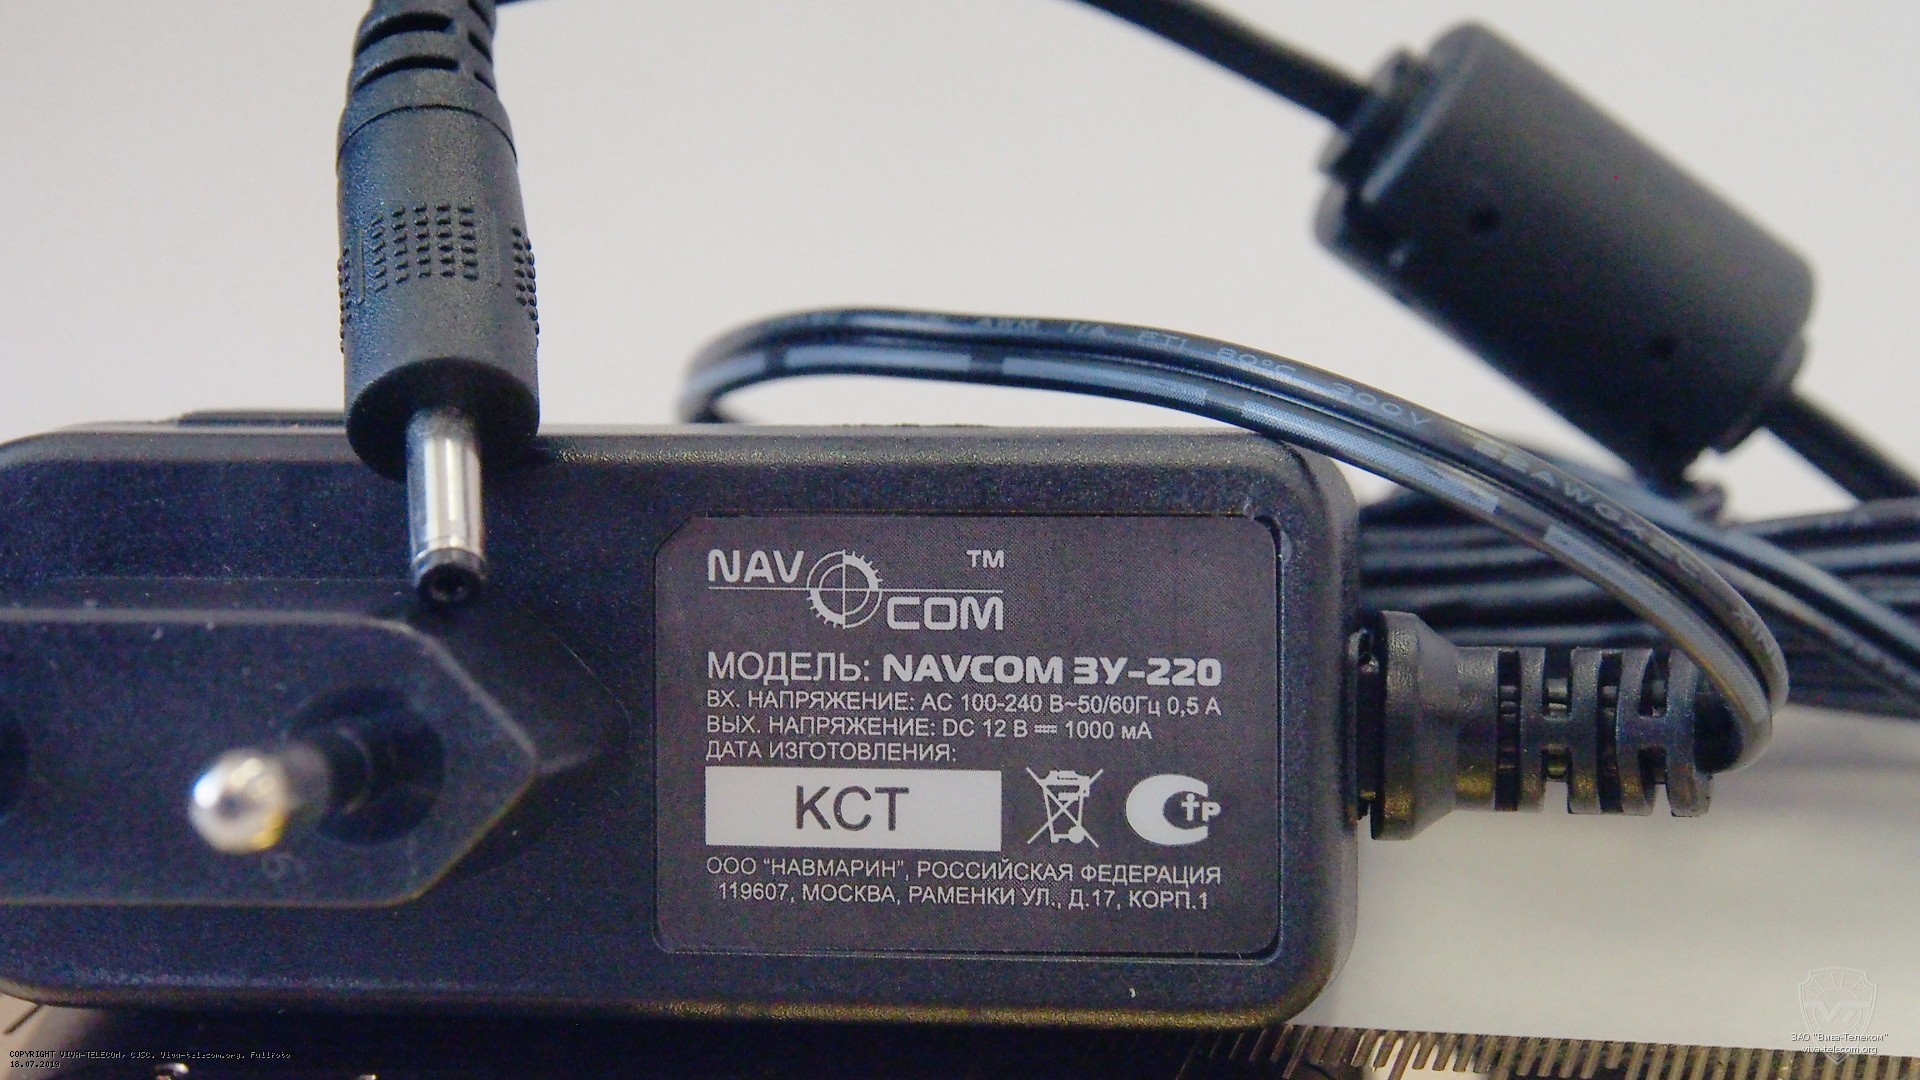       NavCom -303